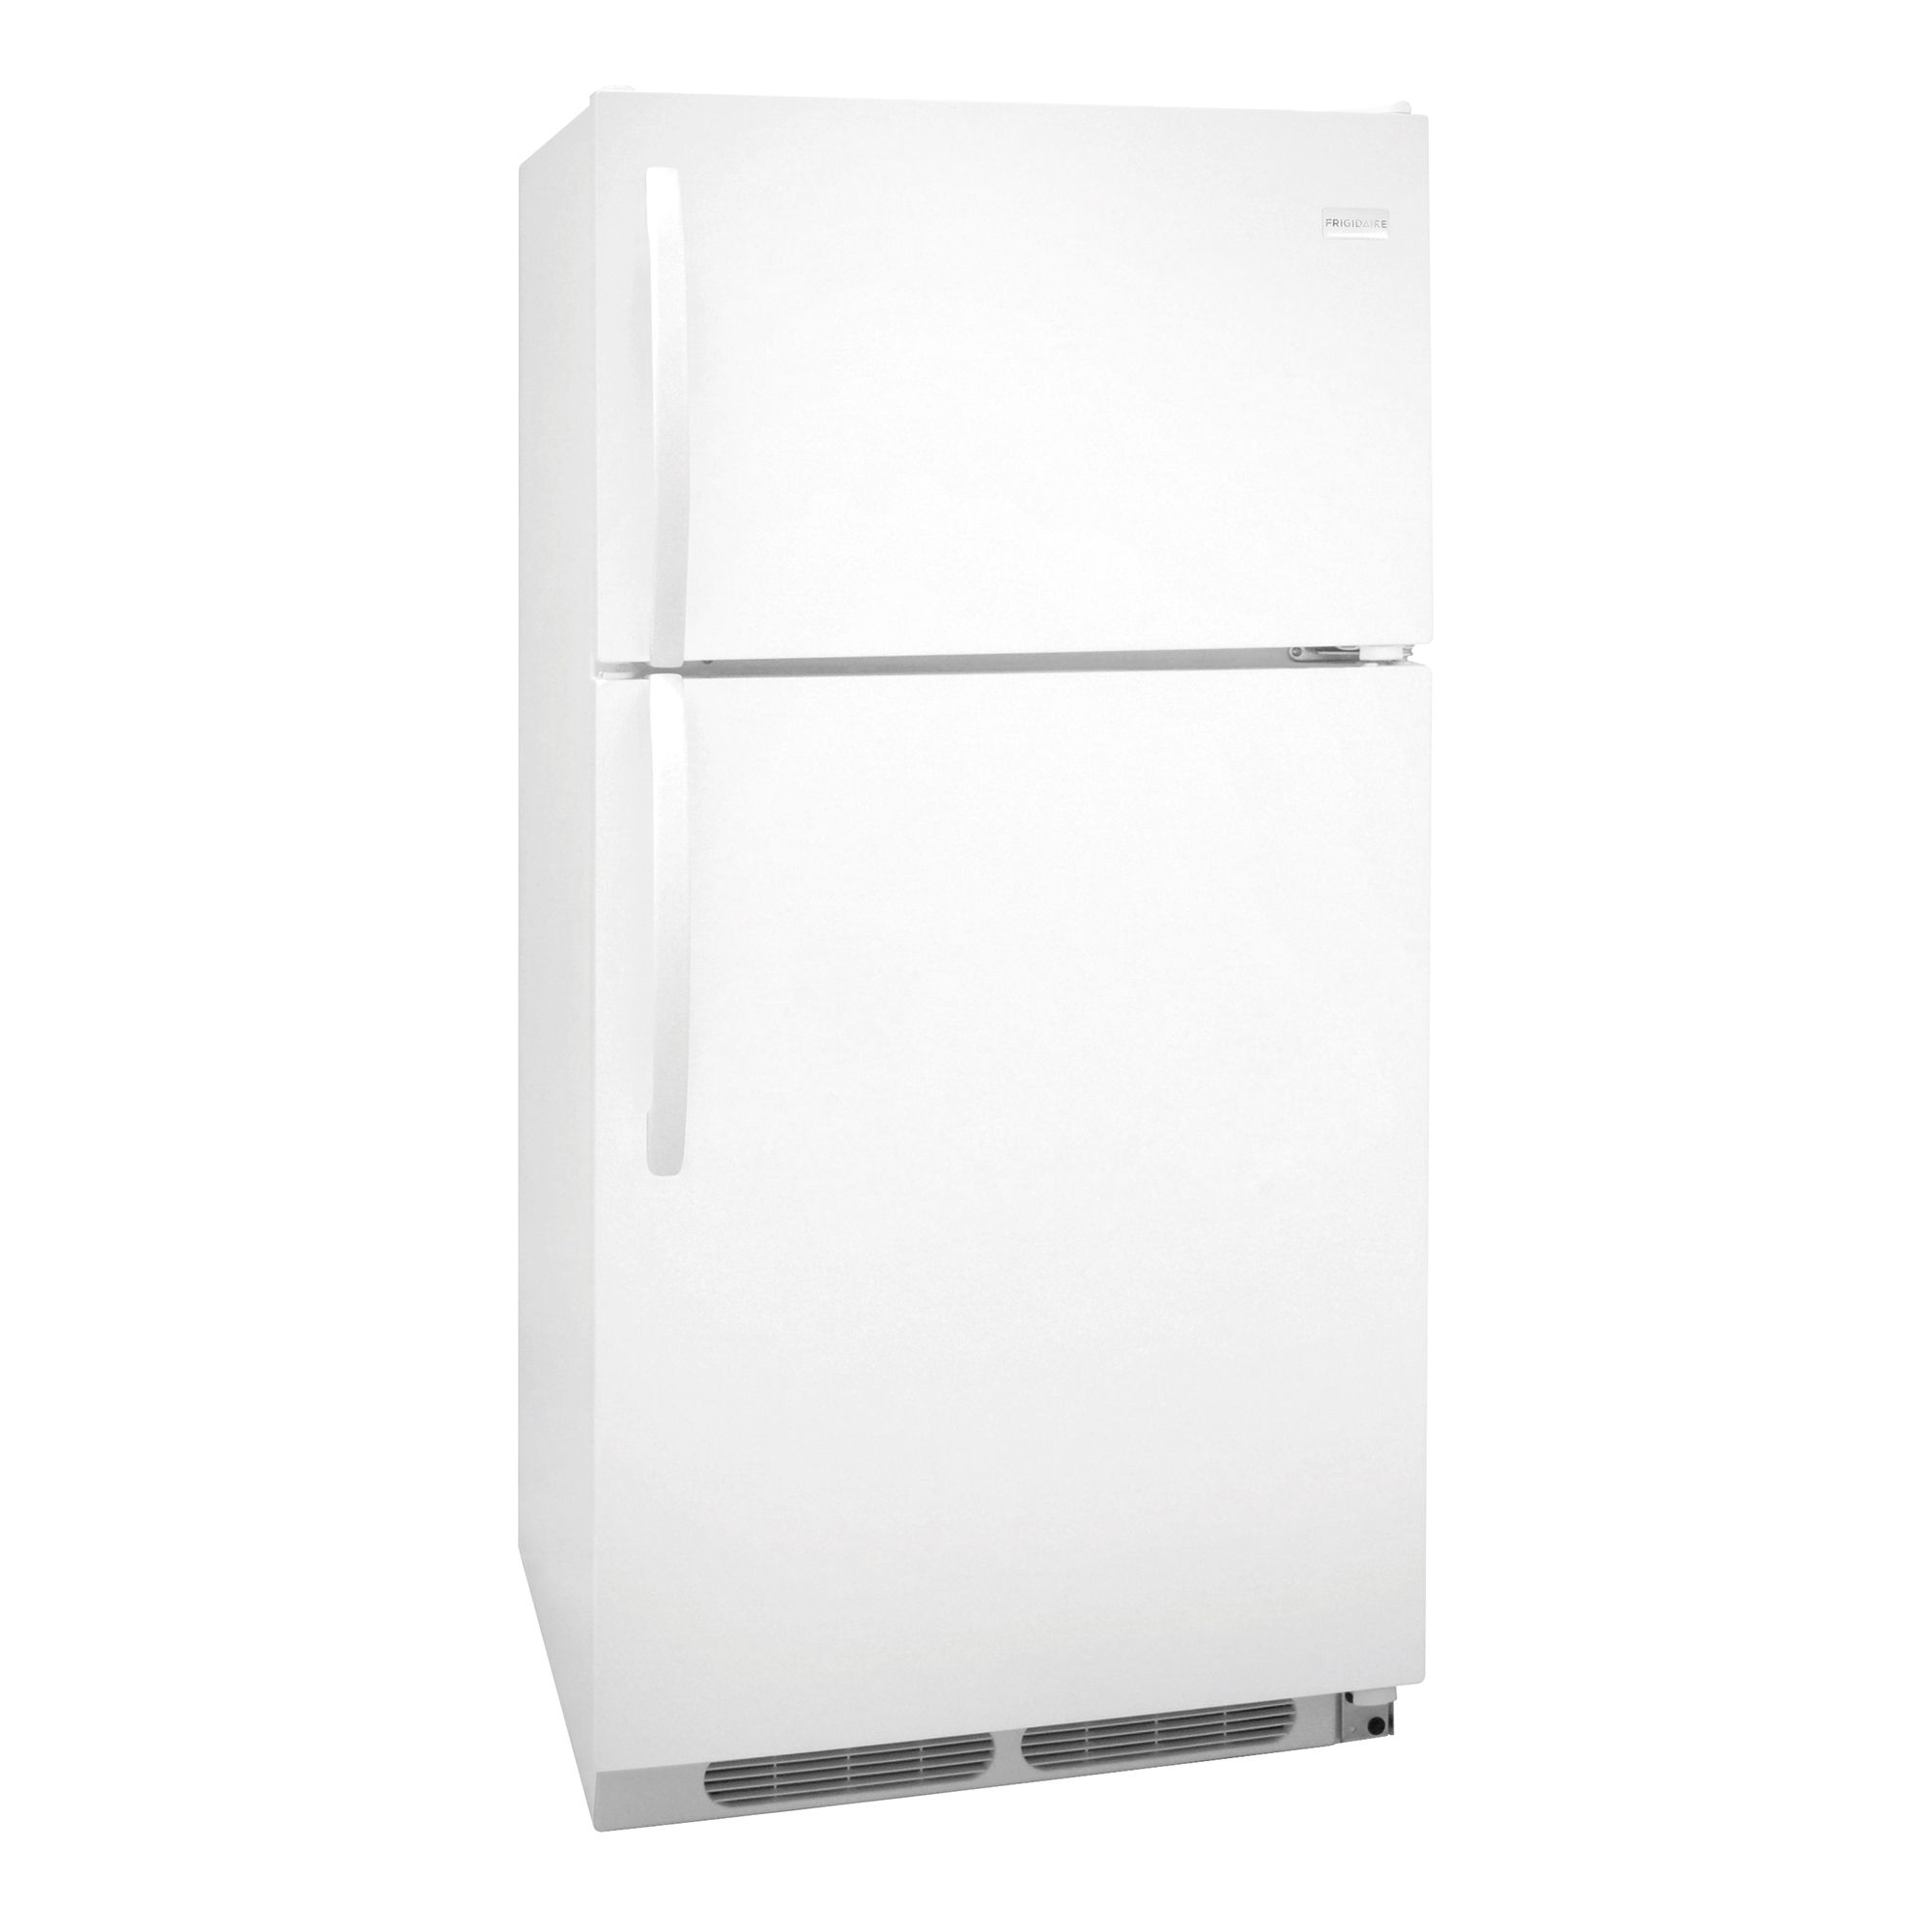 Frigidaire 14.8 cu. ft. Top-Freezer Refrigerator - White